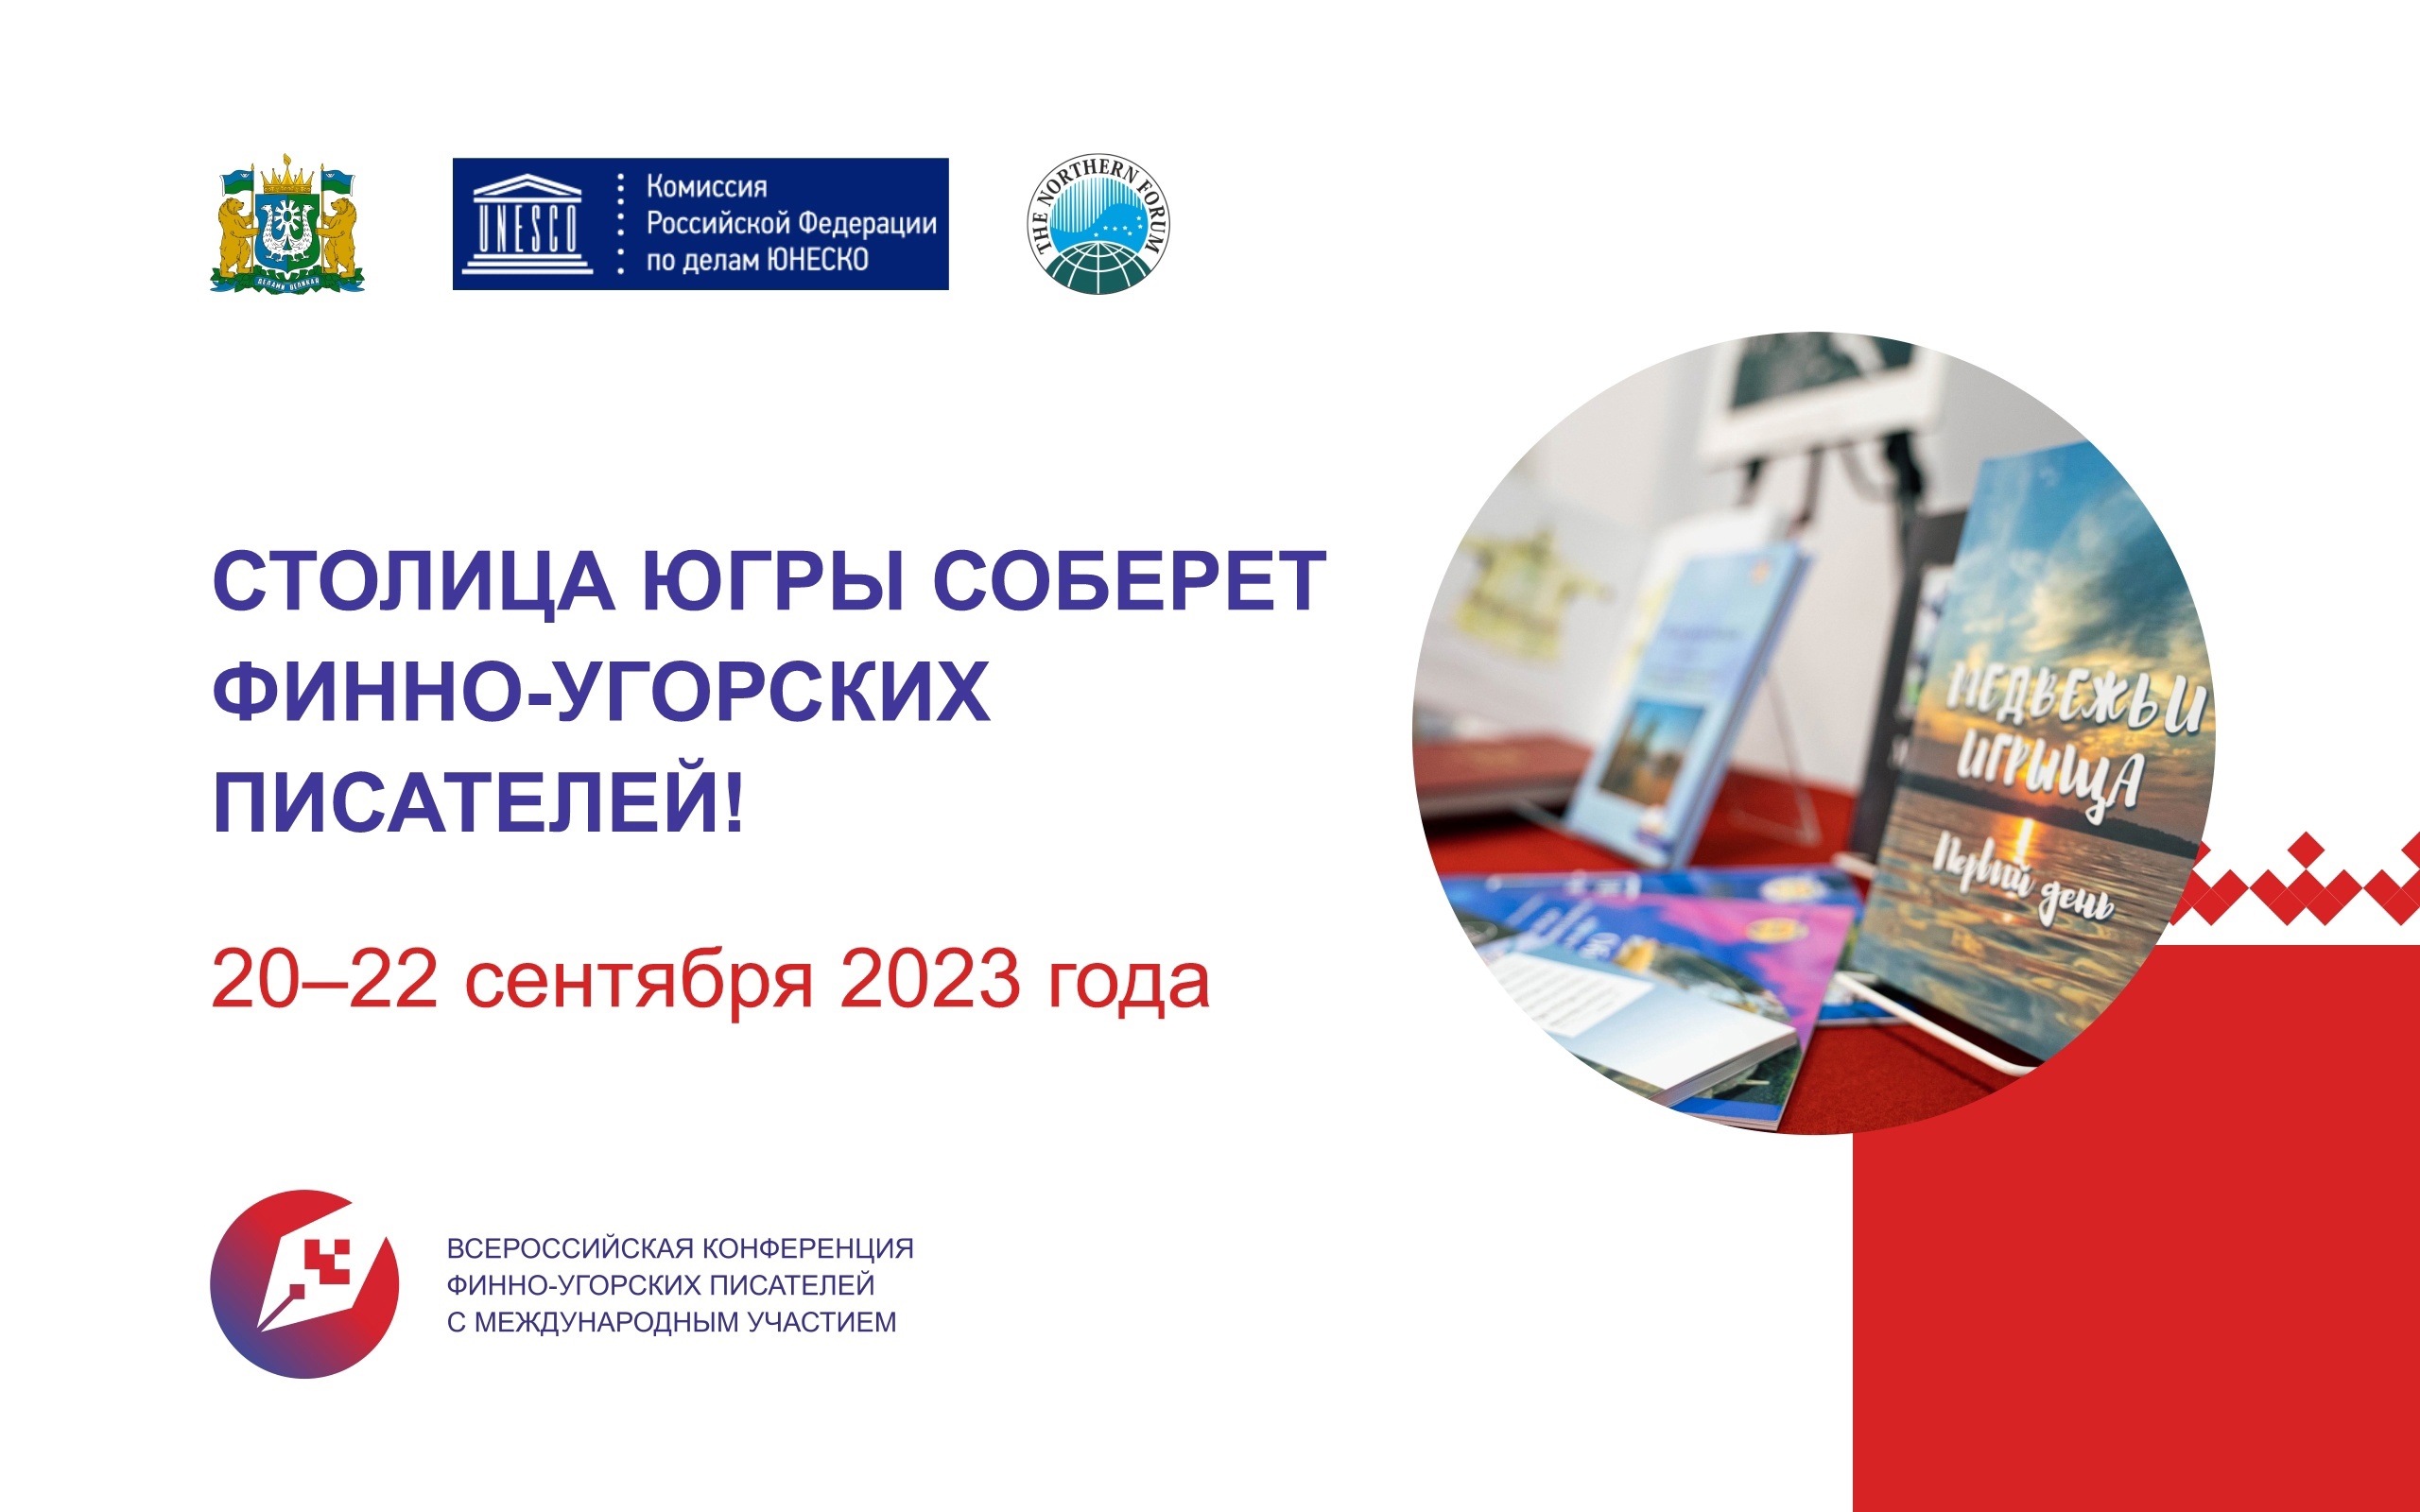 С 20 по 22 сентября в Ханты-Мансийске пройдет Всероссийская конференция финно-угорских писателей с международным участием.